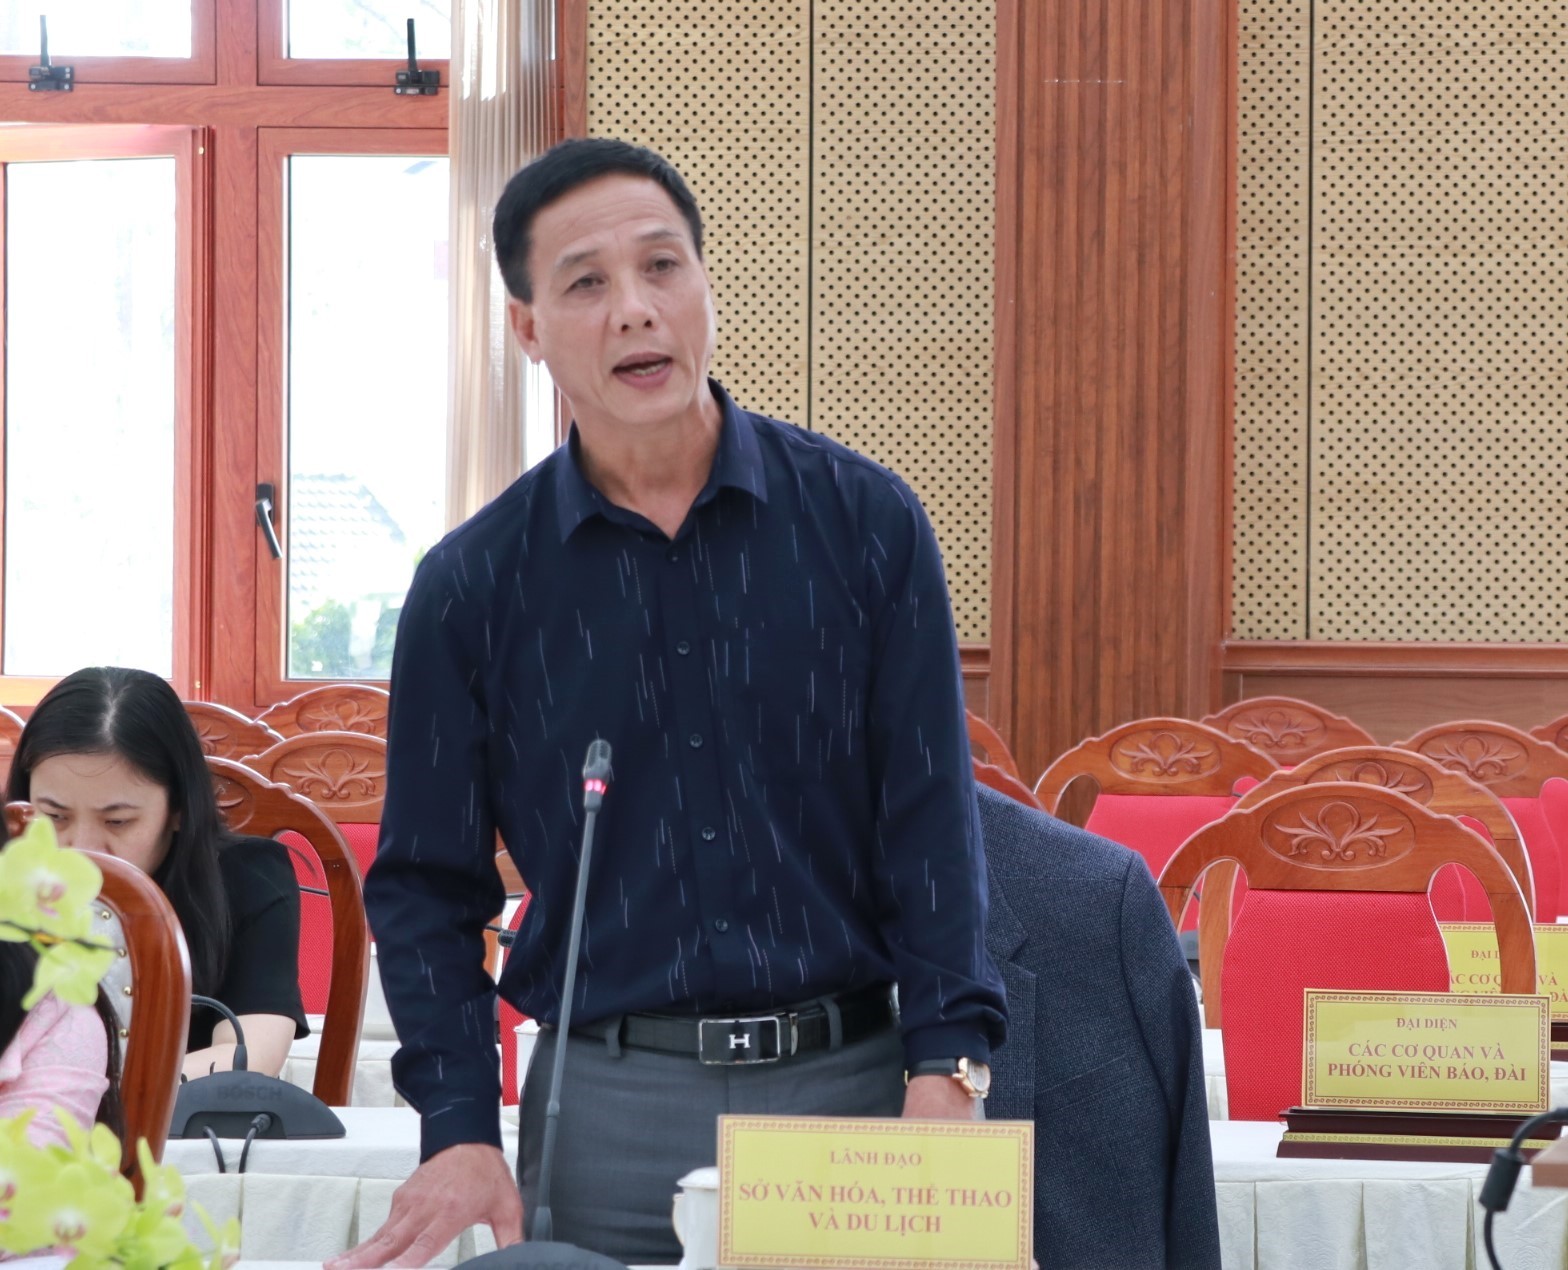 Ông Nguyễn Tiến Hải – Phó Giám đốc Sở VHTT&DL tỉnh Lâm Đồng, cung cấp thông tin cho báo chí.